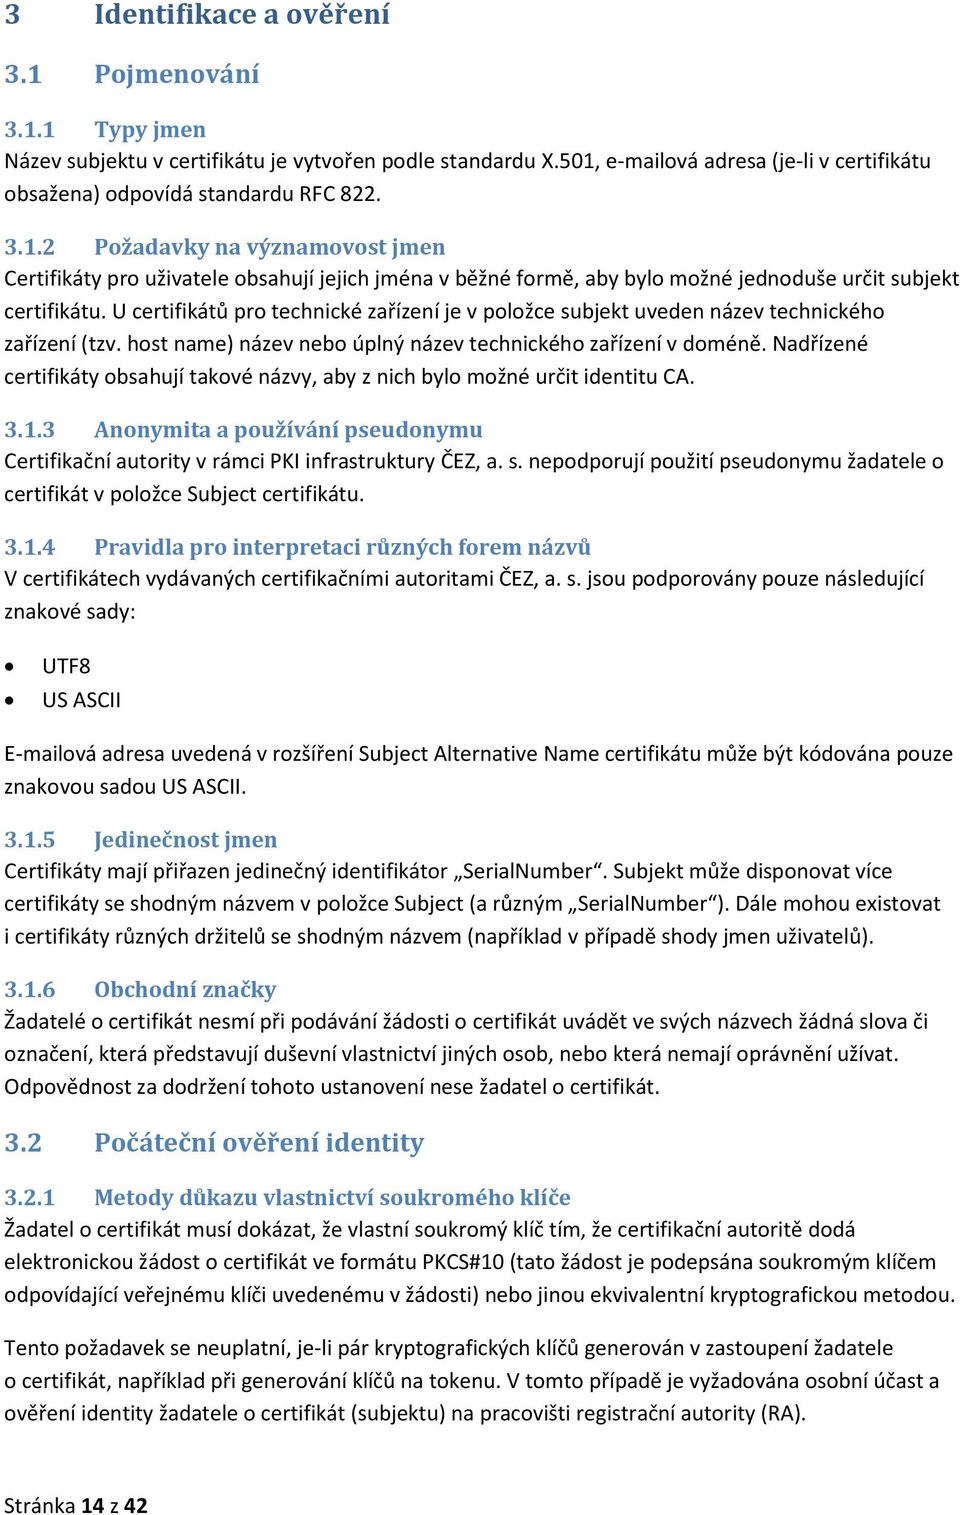 Nadřízené certifikáty obsahují takové názvy, aby z nich bylo možné určit identitu CA. 3.1.3 Anonymita a používání pseudonymu Certifikační autority v rámci PKI infrastruktury ČEZ, a. s.